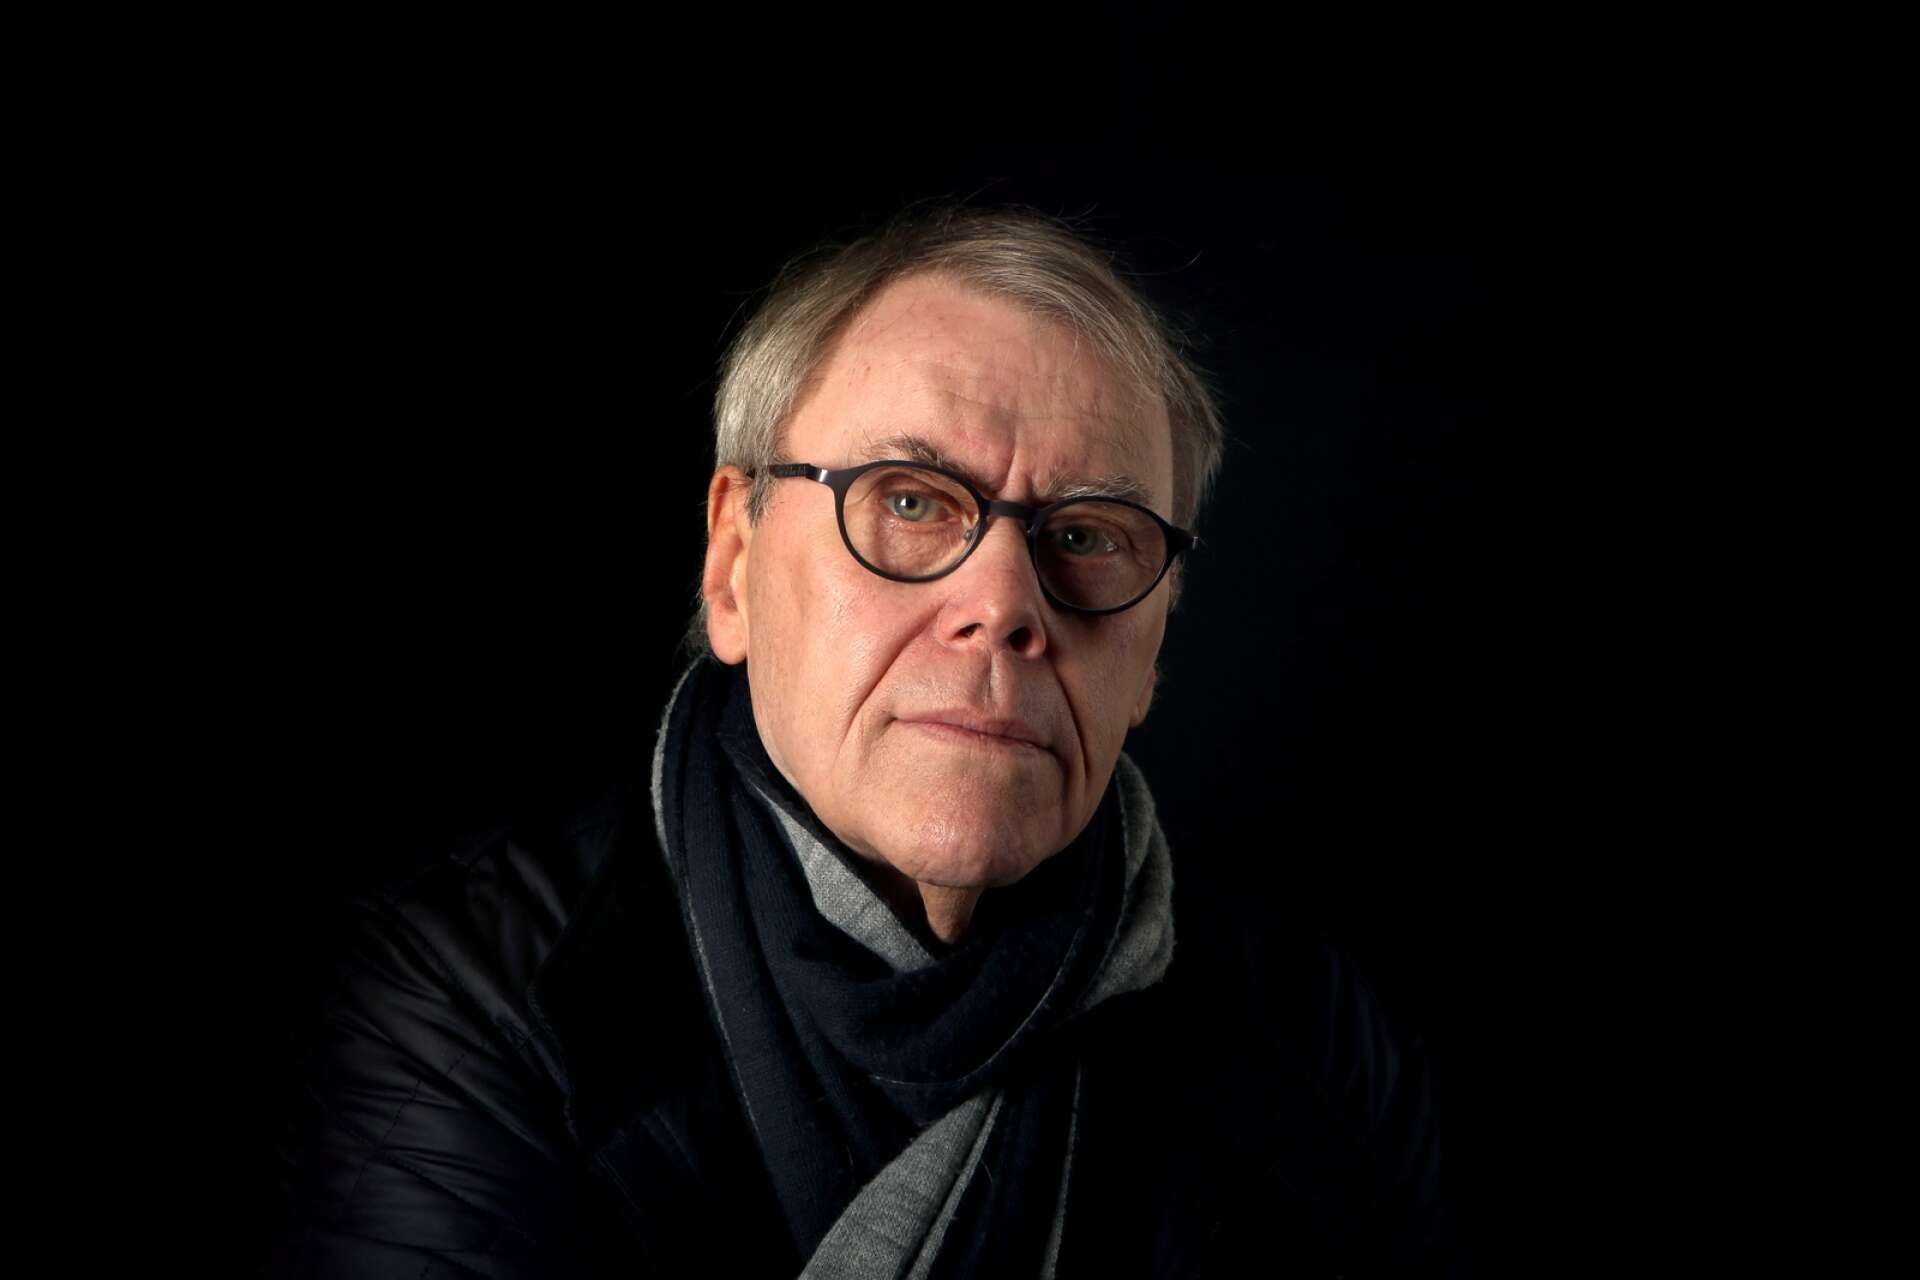 Mats Dahlberg är tidigare kulturredaktör på NWT och har haft kontakt med Lars Vilks flera gånger.